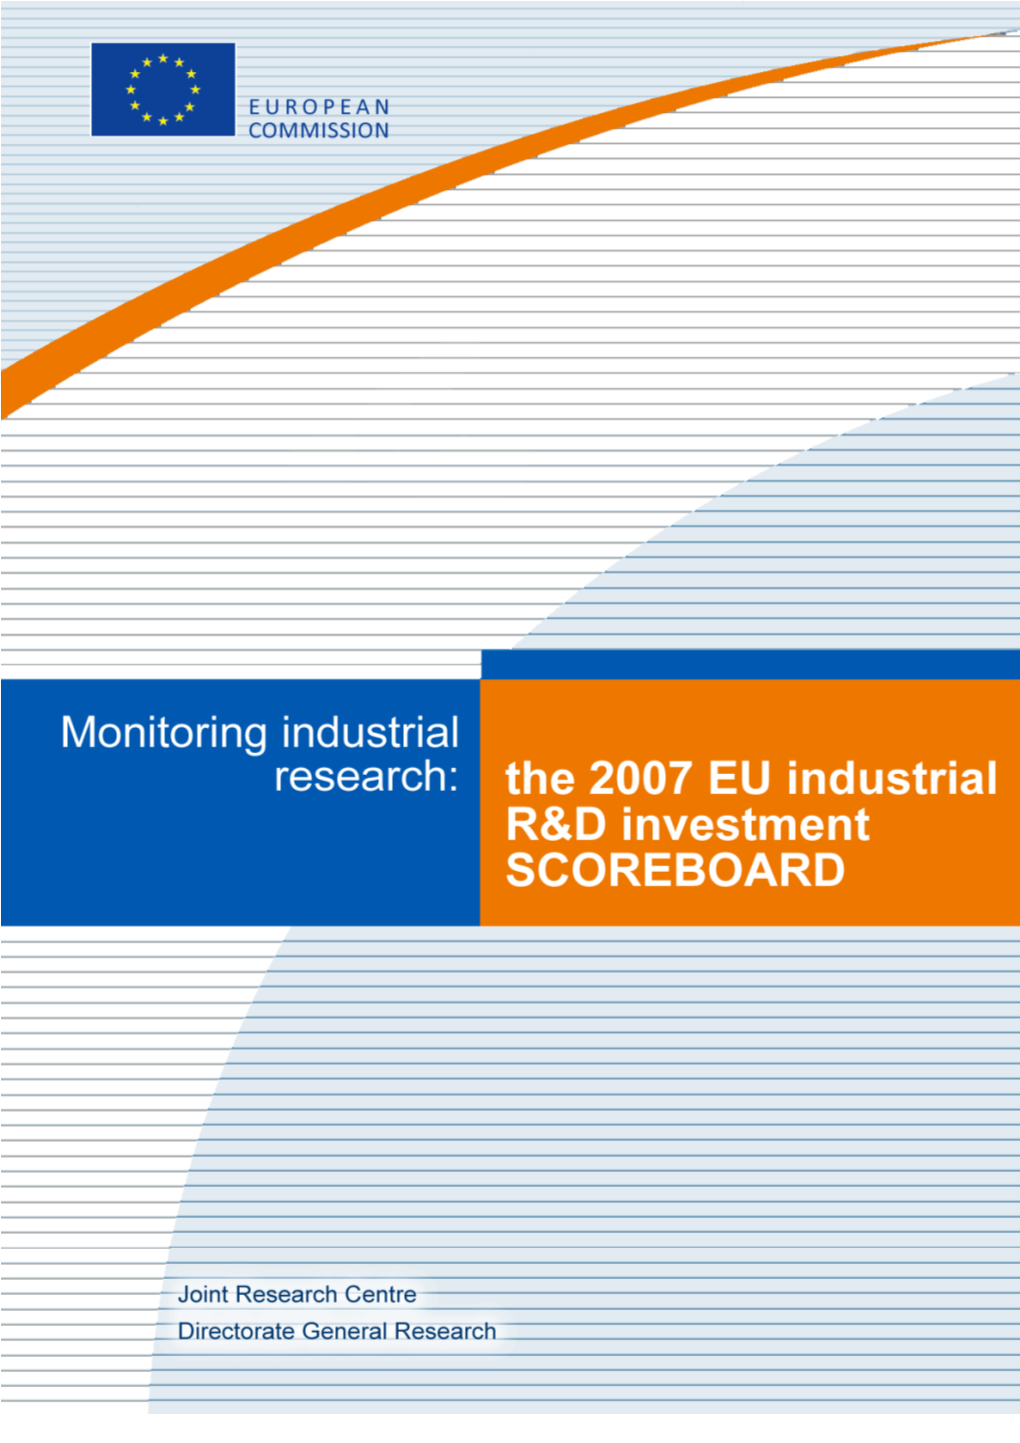 PDF the 2007 EU Industrial R&D Investment Scoreboard